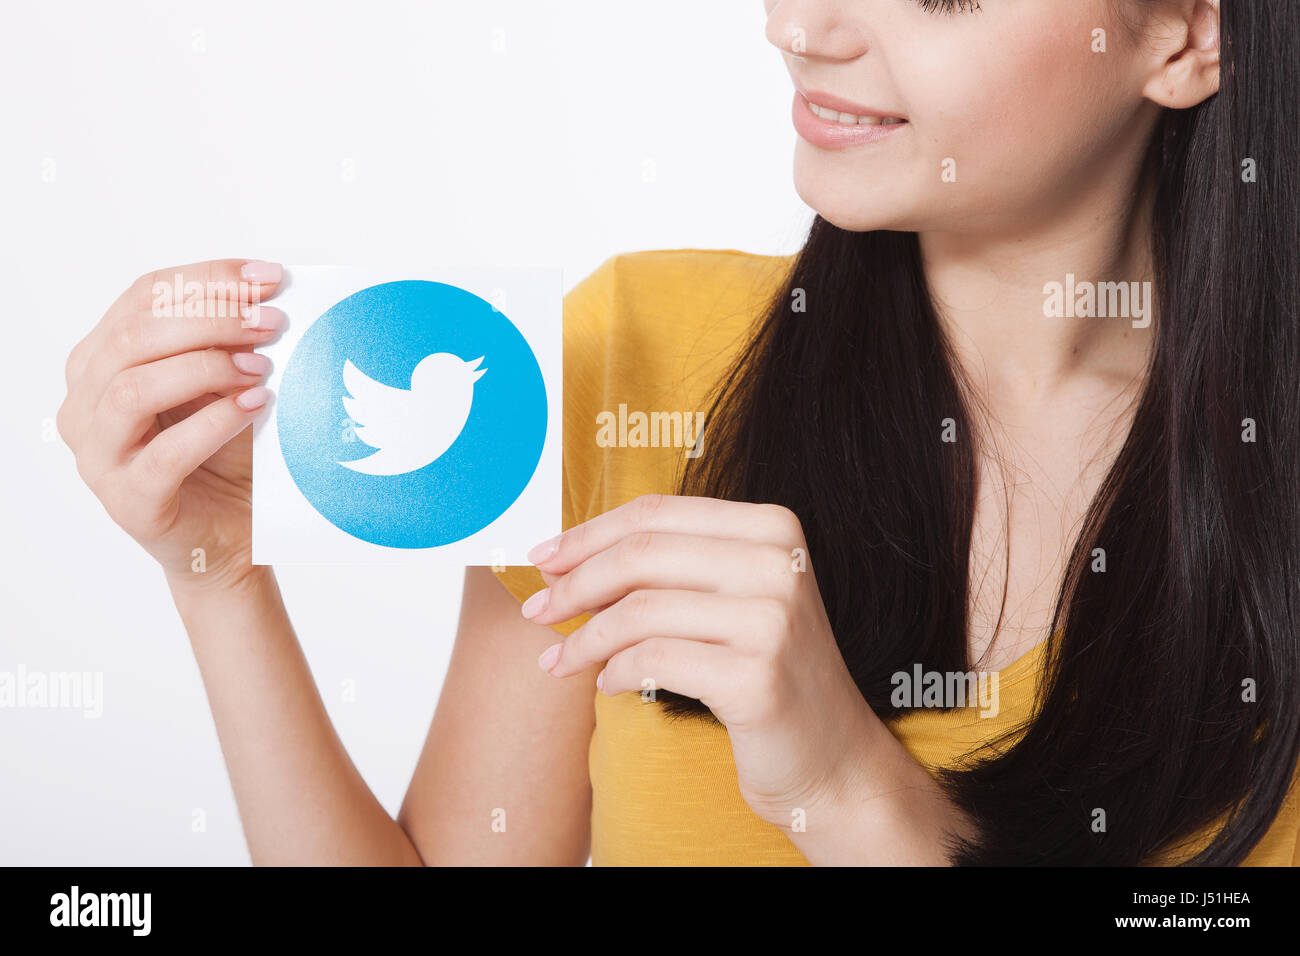 Kiew, UKRAINE - 22. August 2016: Frau Hände halten Twitter Logo Icoi Vogel bedrucktes Papier. Twitter ist ein social Networking-Onlinedienst, mit dem Benutzer senden und Lesen von SMS-Nachrichten. Stockfoto